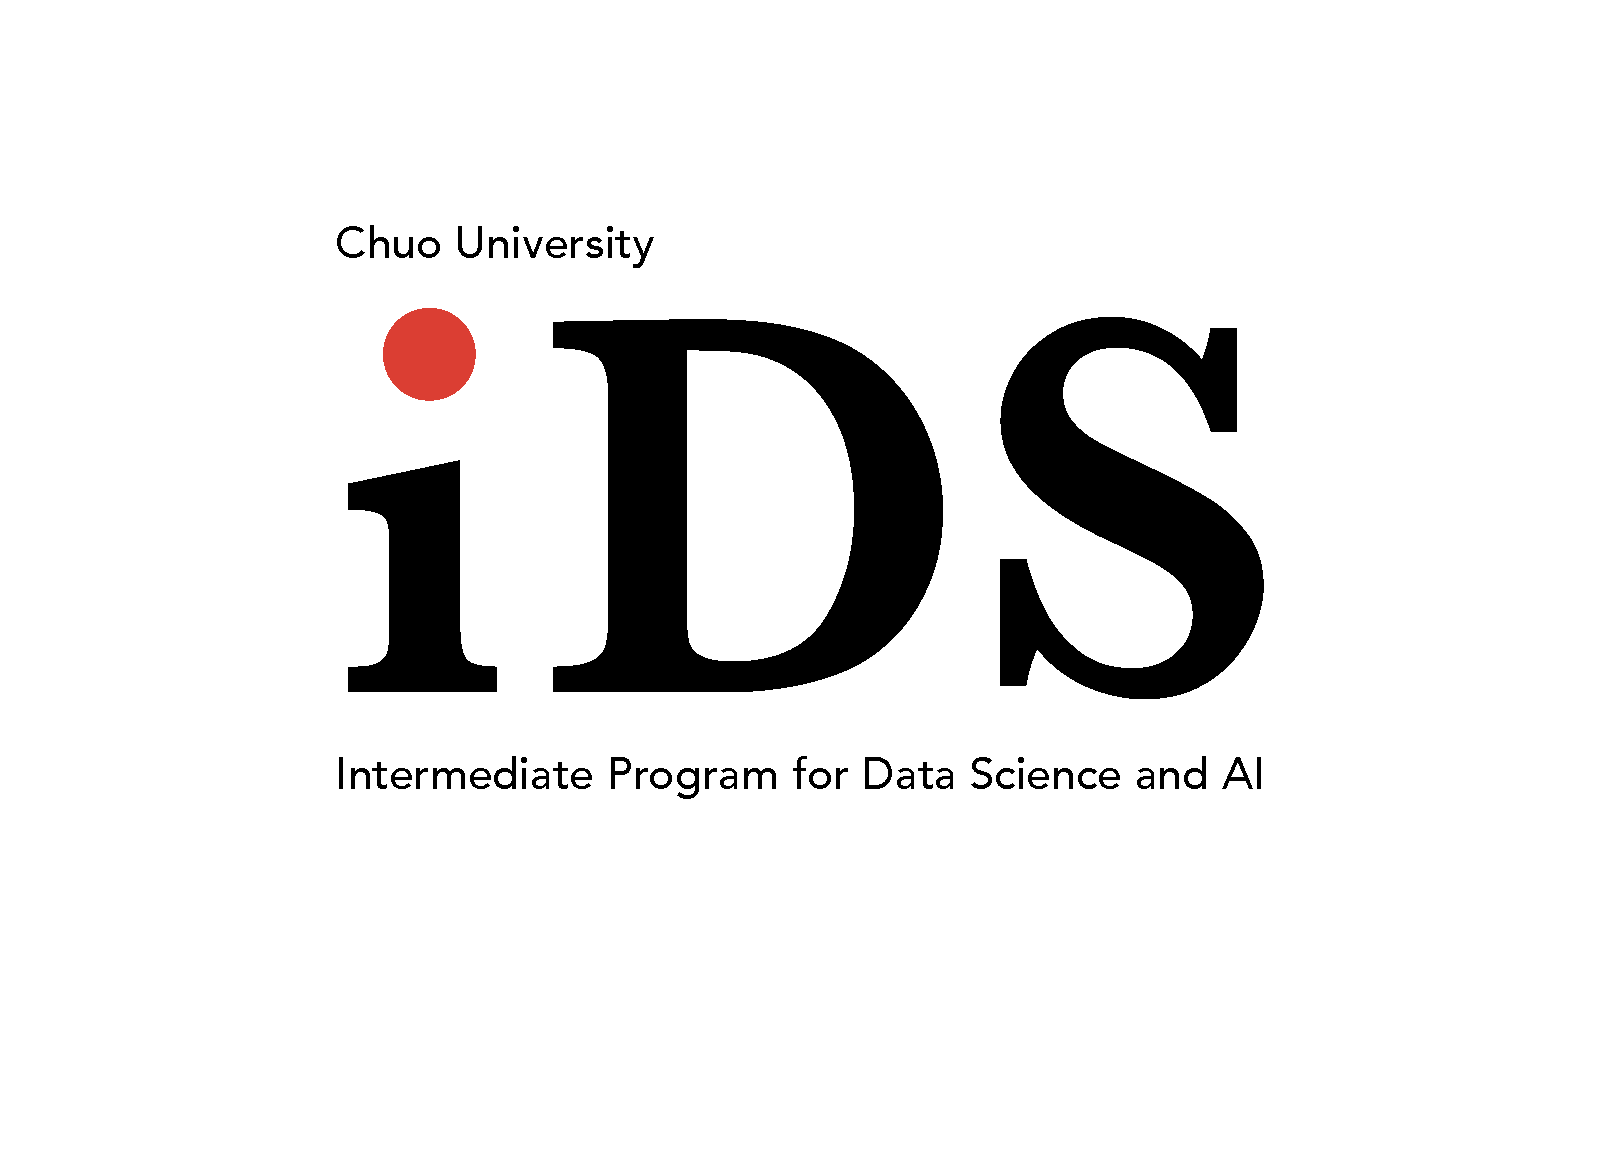 [中央大学]AI・データサイエンスの実践的な学びの場「iDSプログラム」を2022年4月より開始 -- 8学部すべてから学生が集い、応用基礎レベルを修得 --